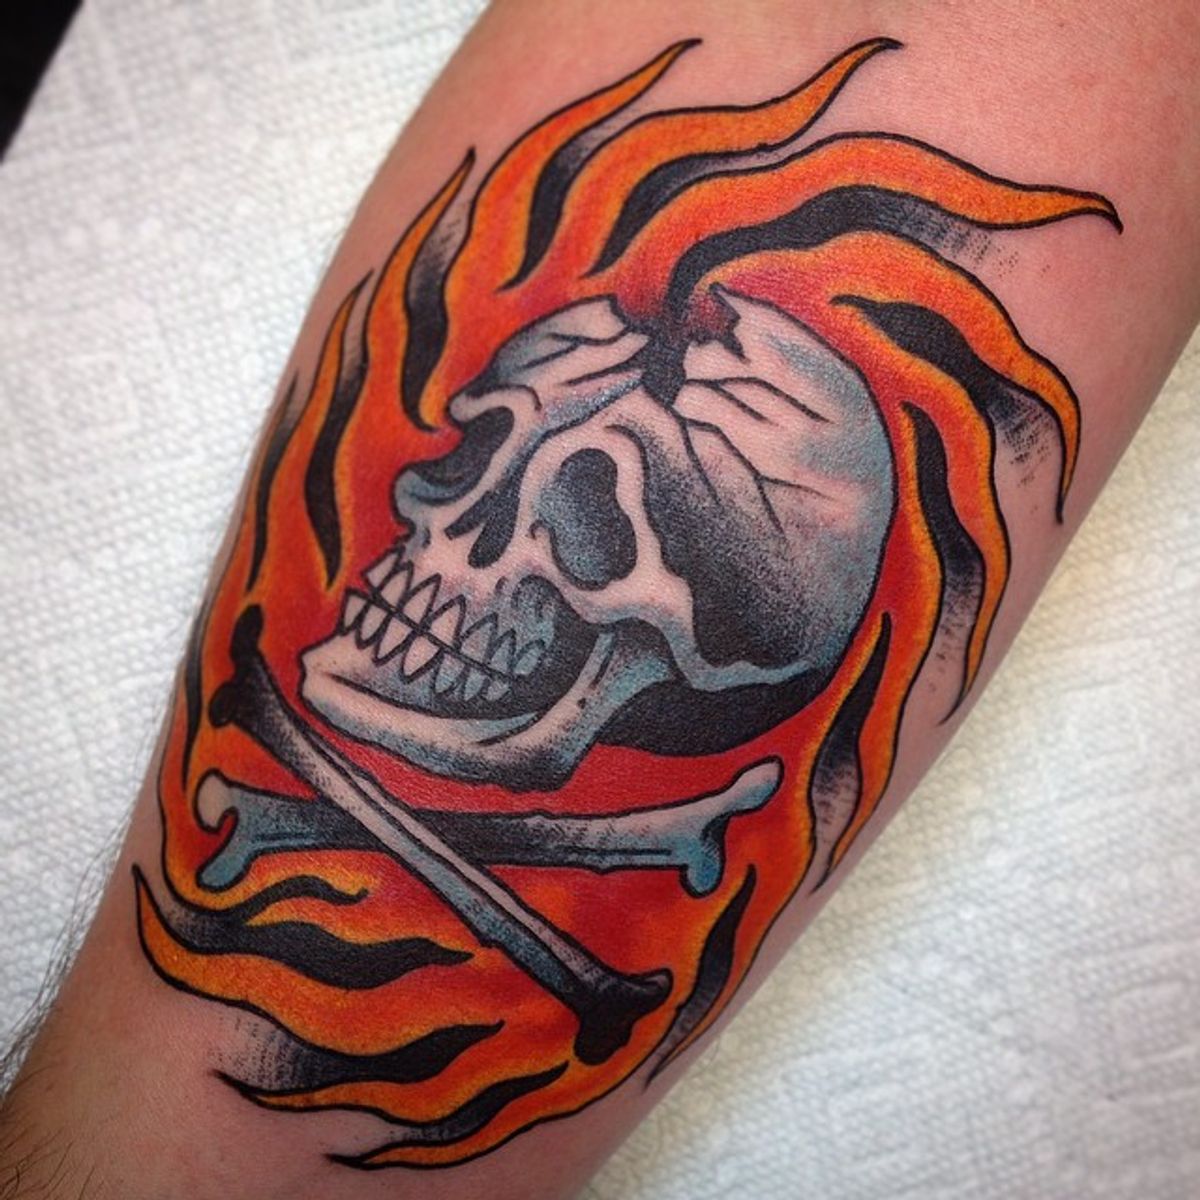 flaming skull and crossbones tattoo